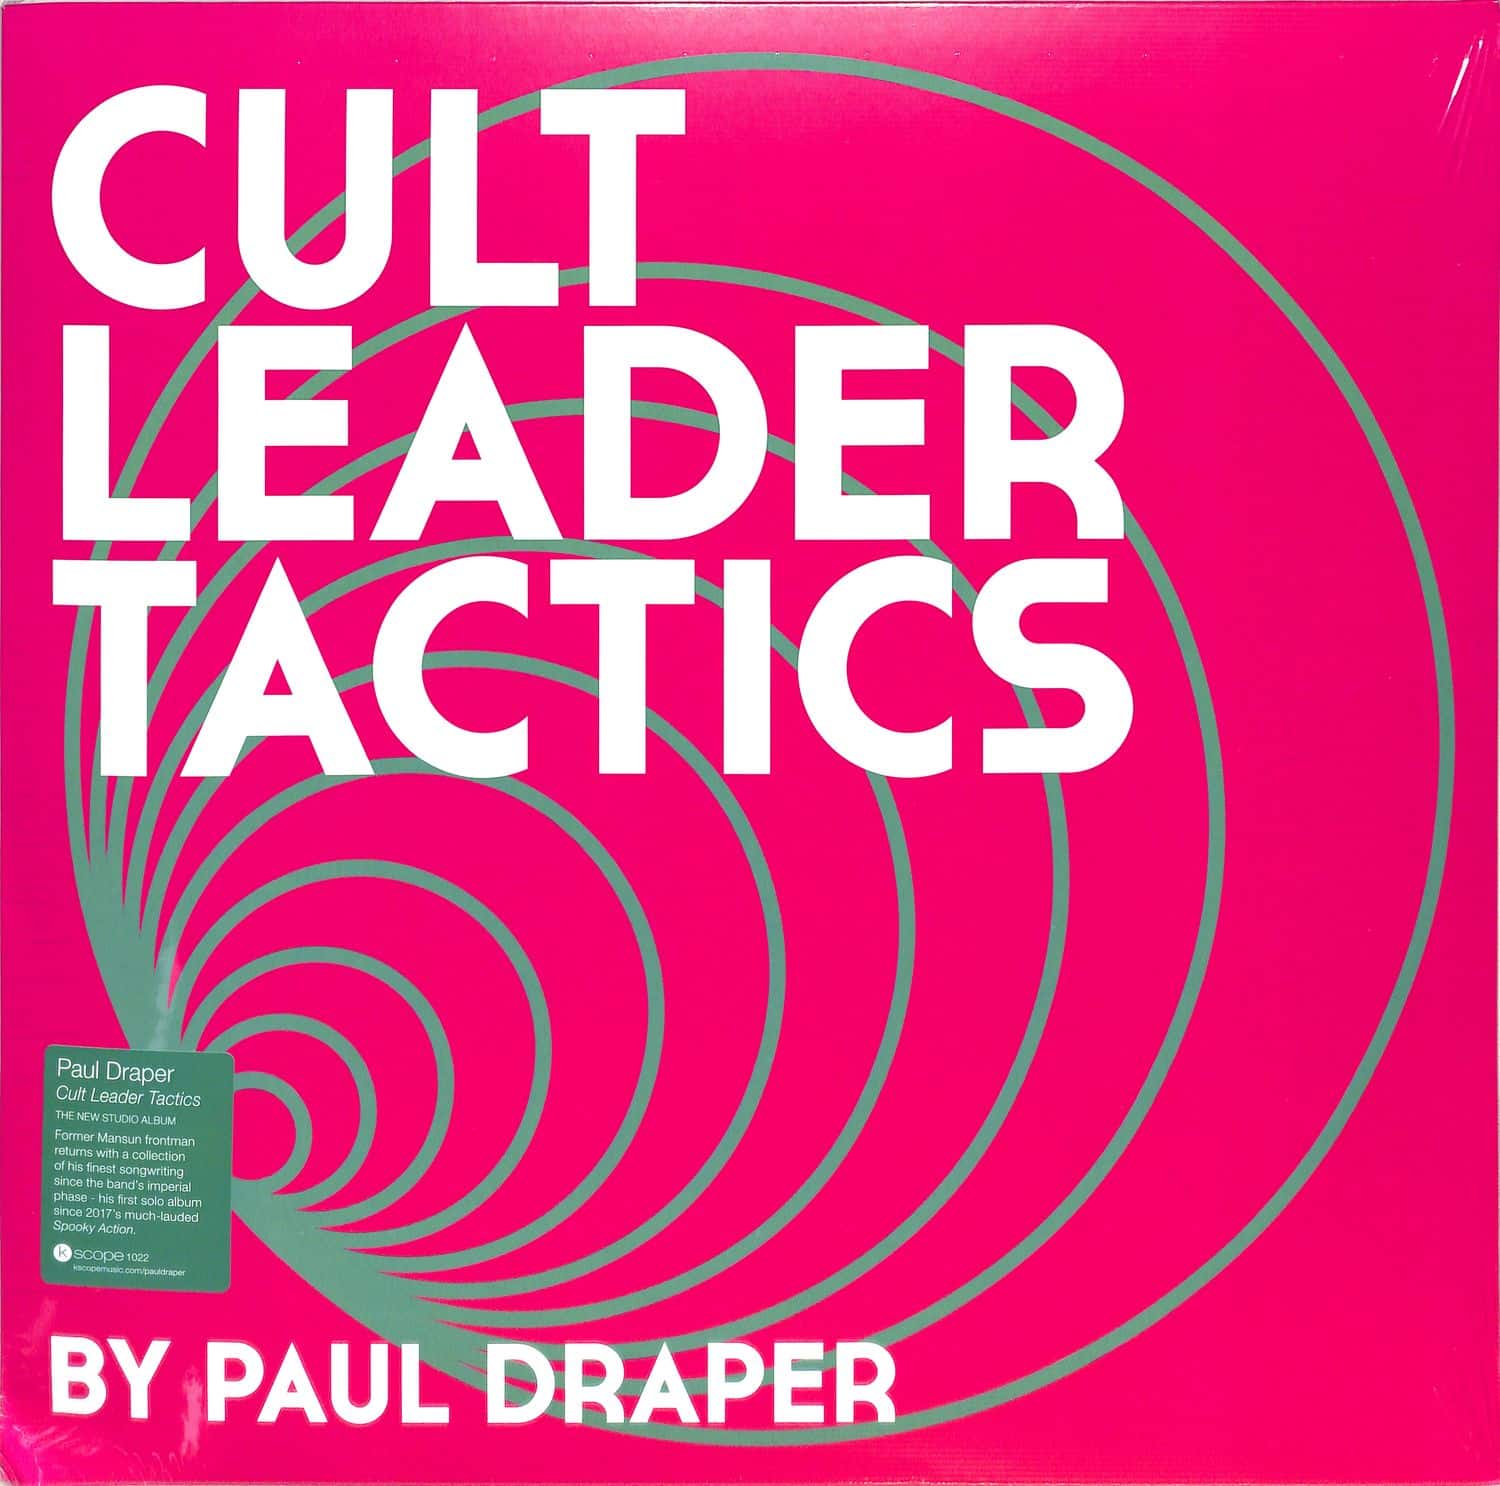 Paul Draper - CULT LEADER TACTICS